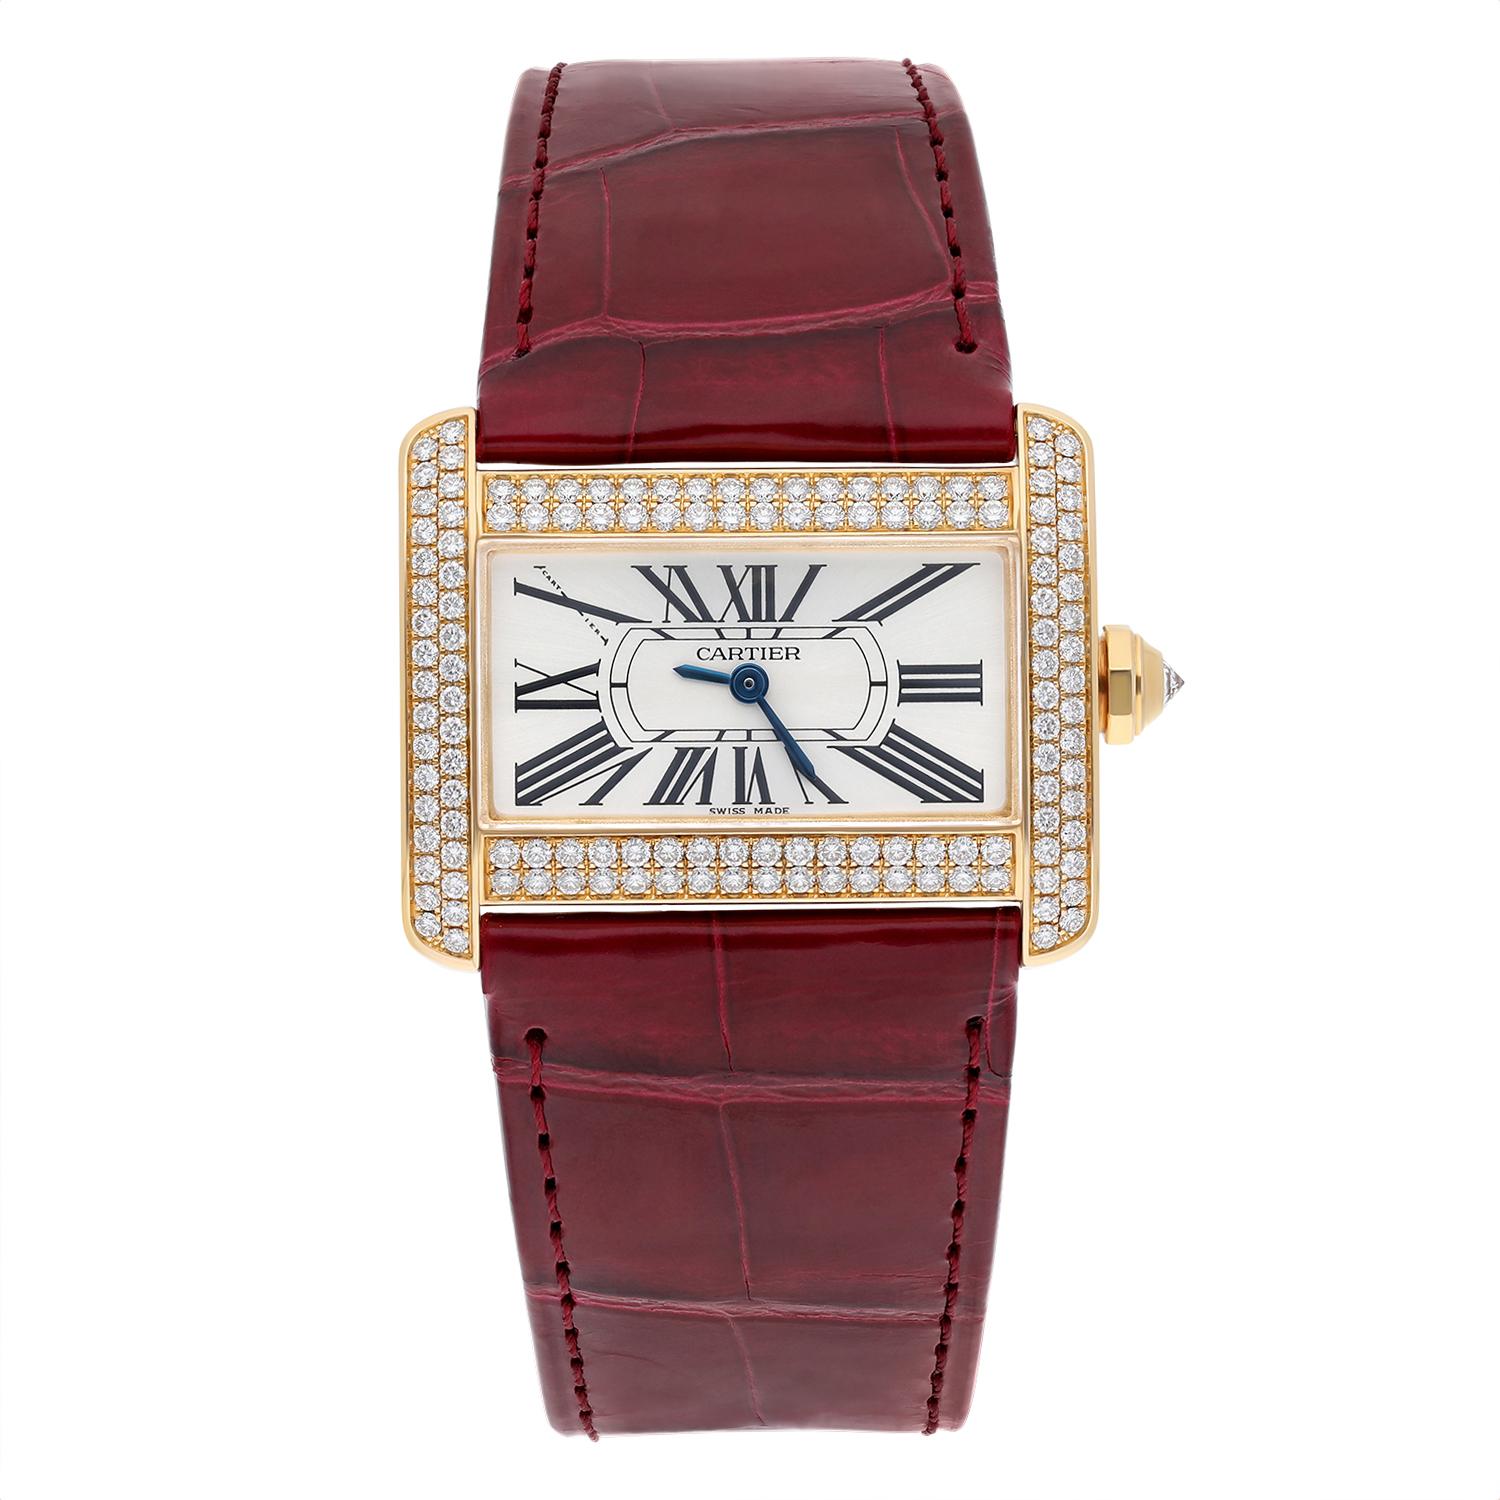 Mit dieser exquisiten Cartier Tank Divan Mini Armbanduhr aus Gelbgold und einem zweiteiligen Lederarmband in einem atemberaubenden Rot unterstreichen Sie Ihren Stil. Die Uhr verfügt über römische Ziffern auf einem silbernen Zifferblatt, wobei die